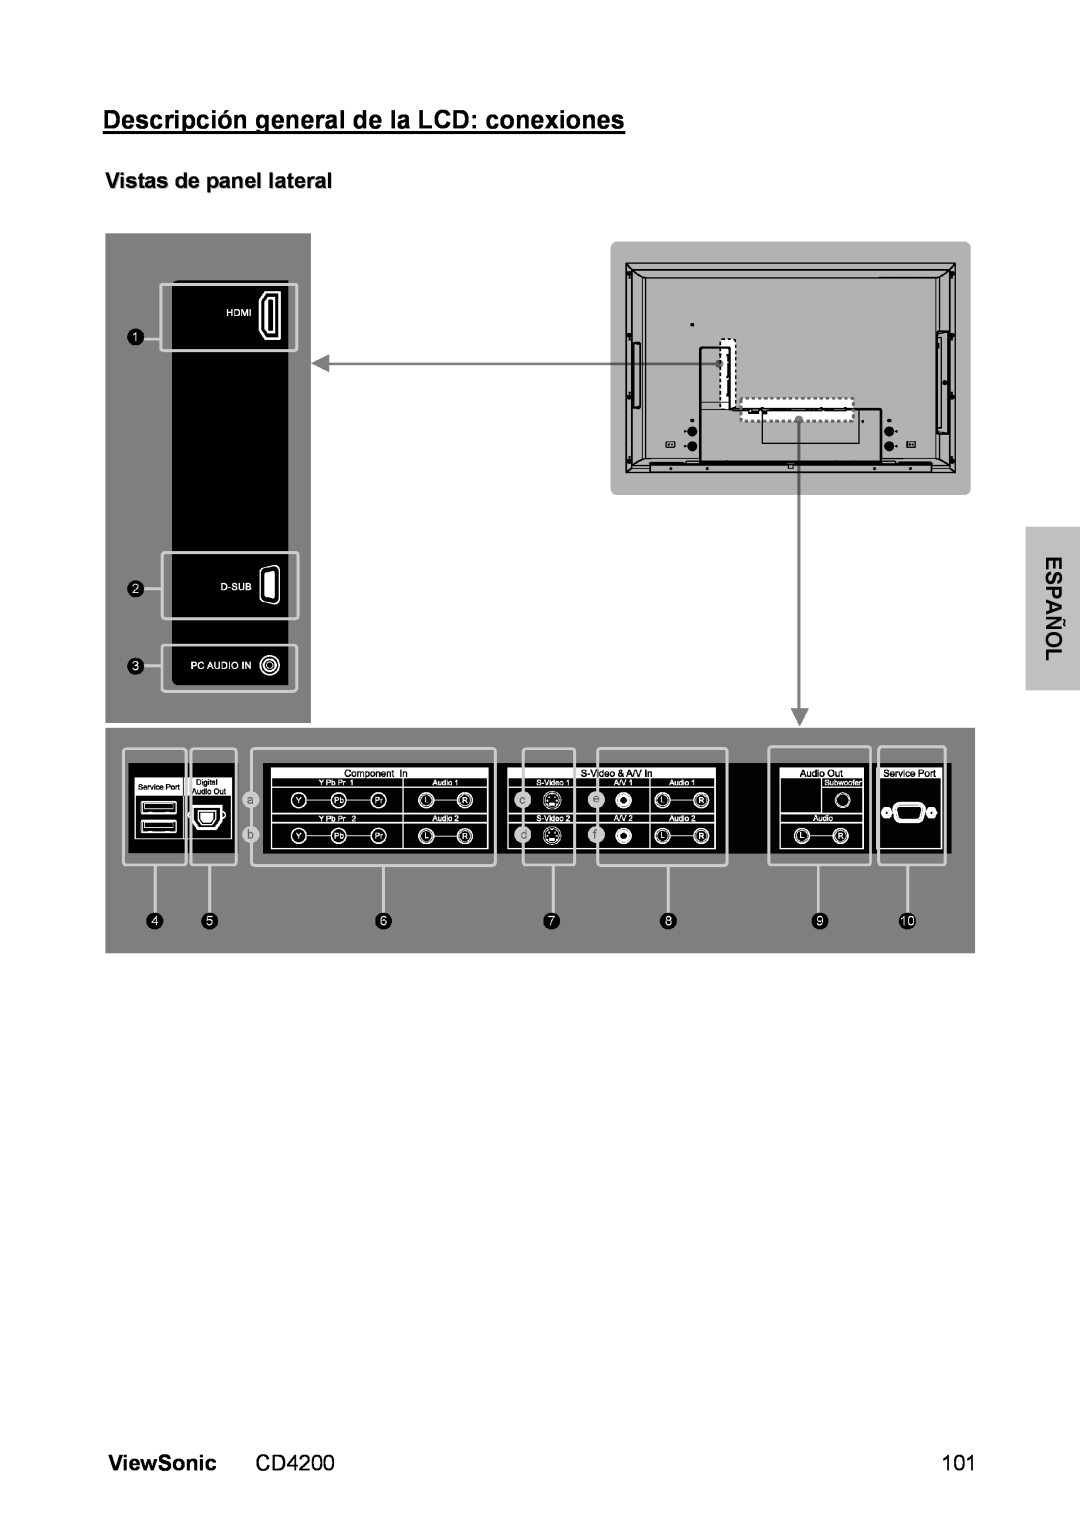 ViewSonic manual Descripción general de la LCD conexiones, Vistas de panel lateral ESPAÑOL, ViewSonic CD4200 